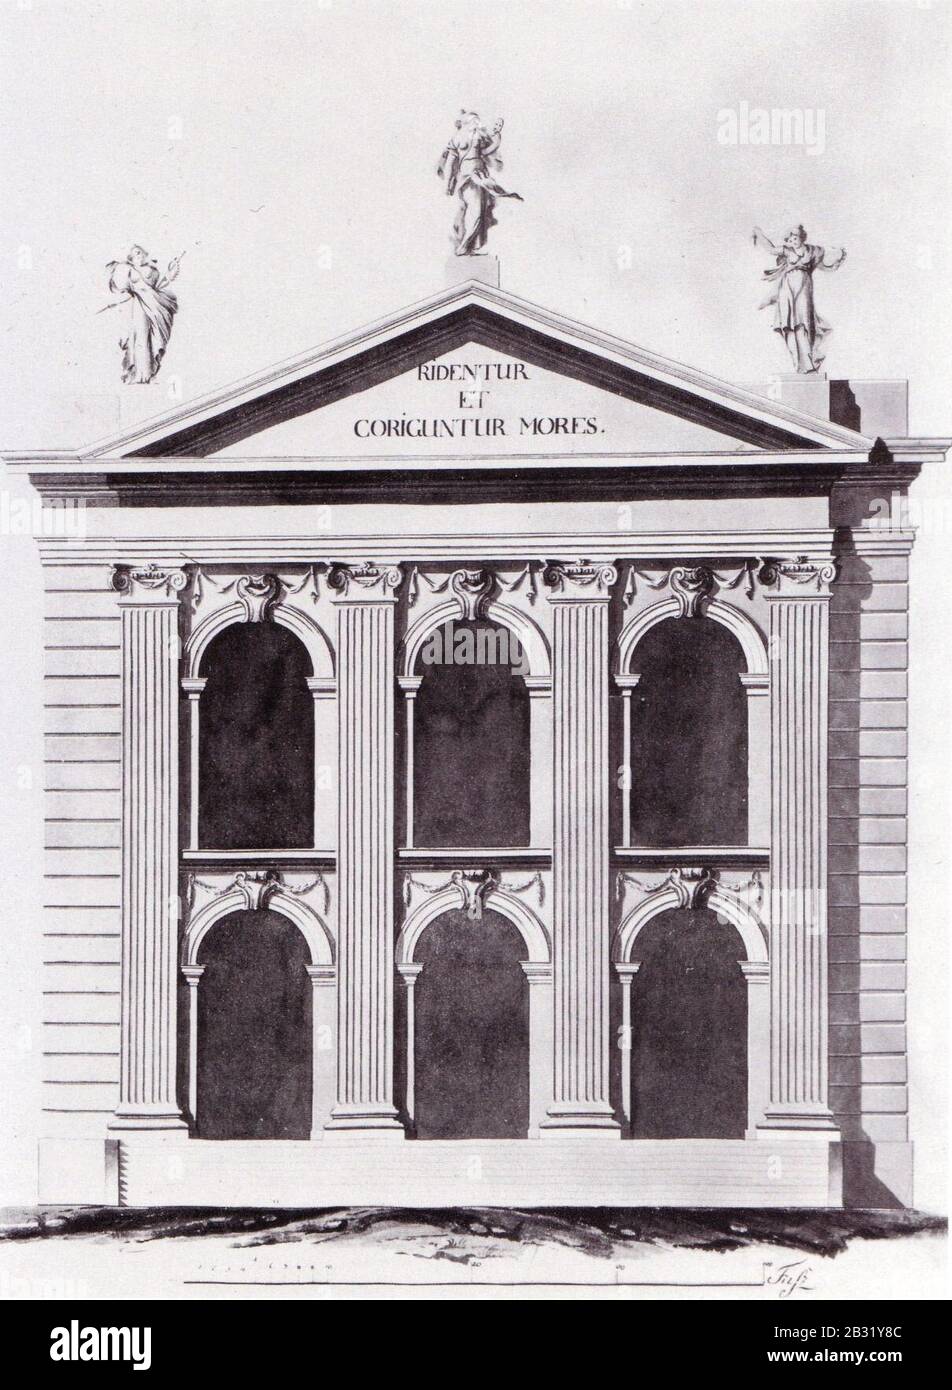 Georg Christian Unger - Fassadenentwurf fuer das Franzoesische Komoedienhaus Berlin, 1774. Stock Photo